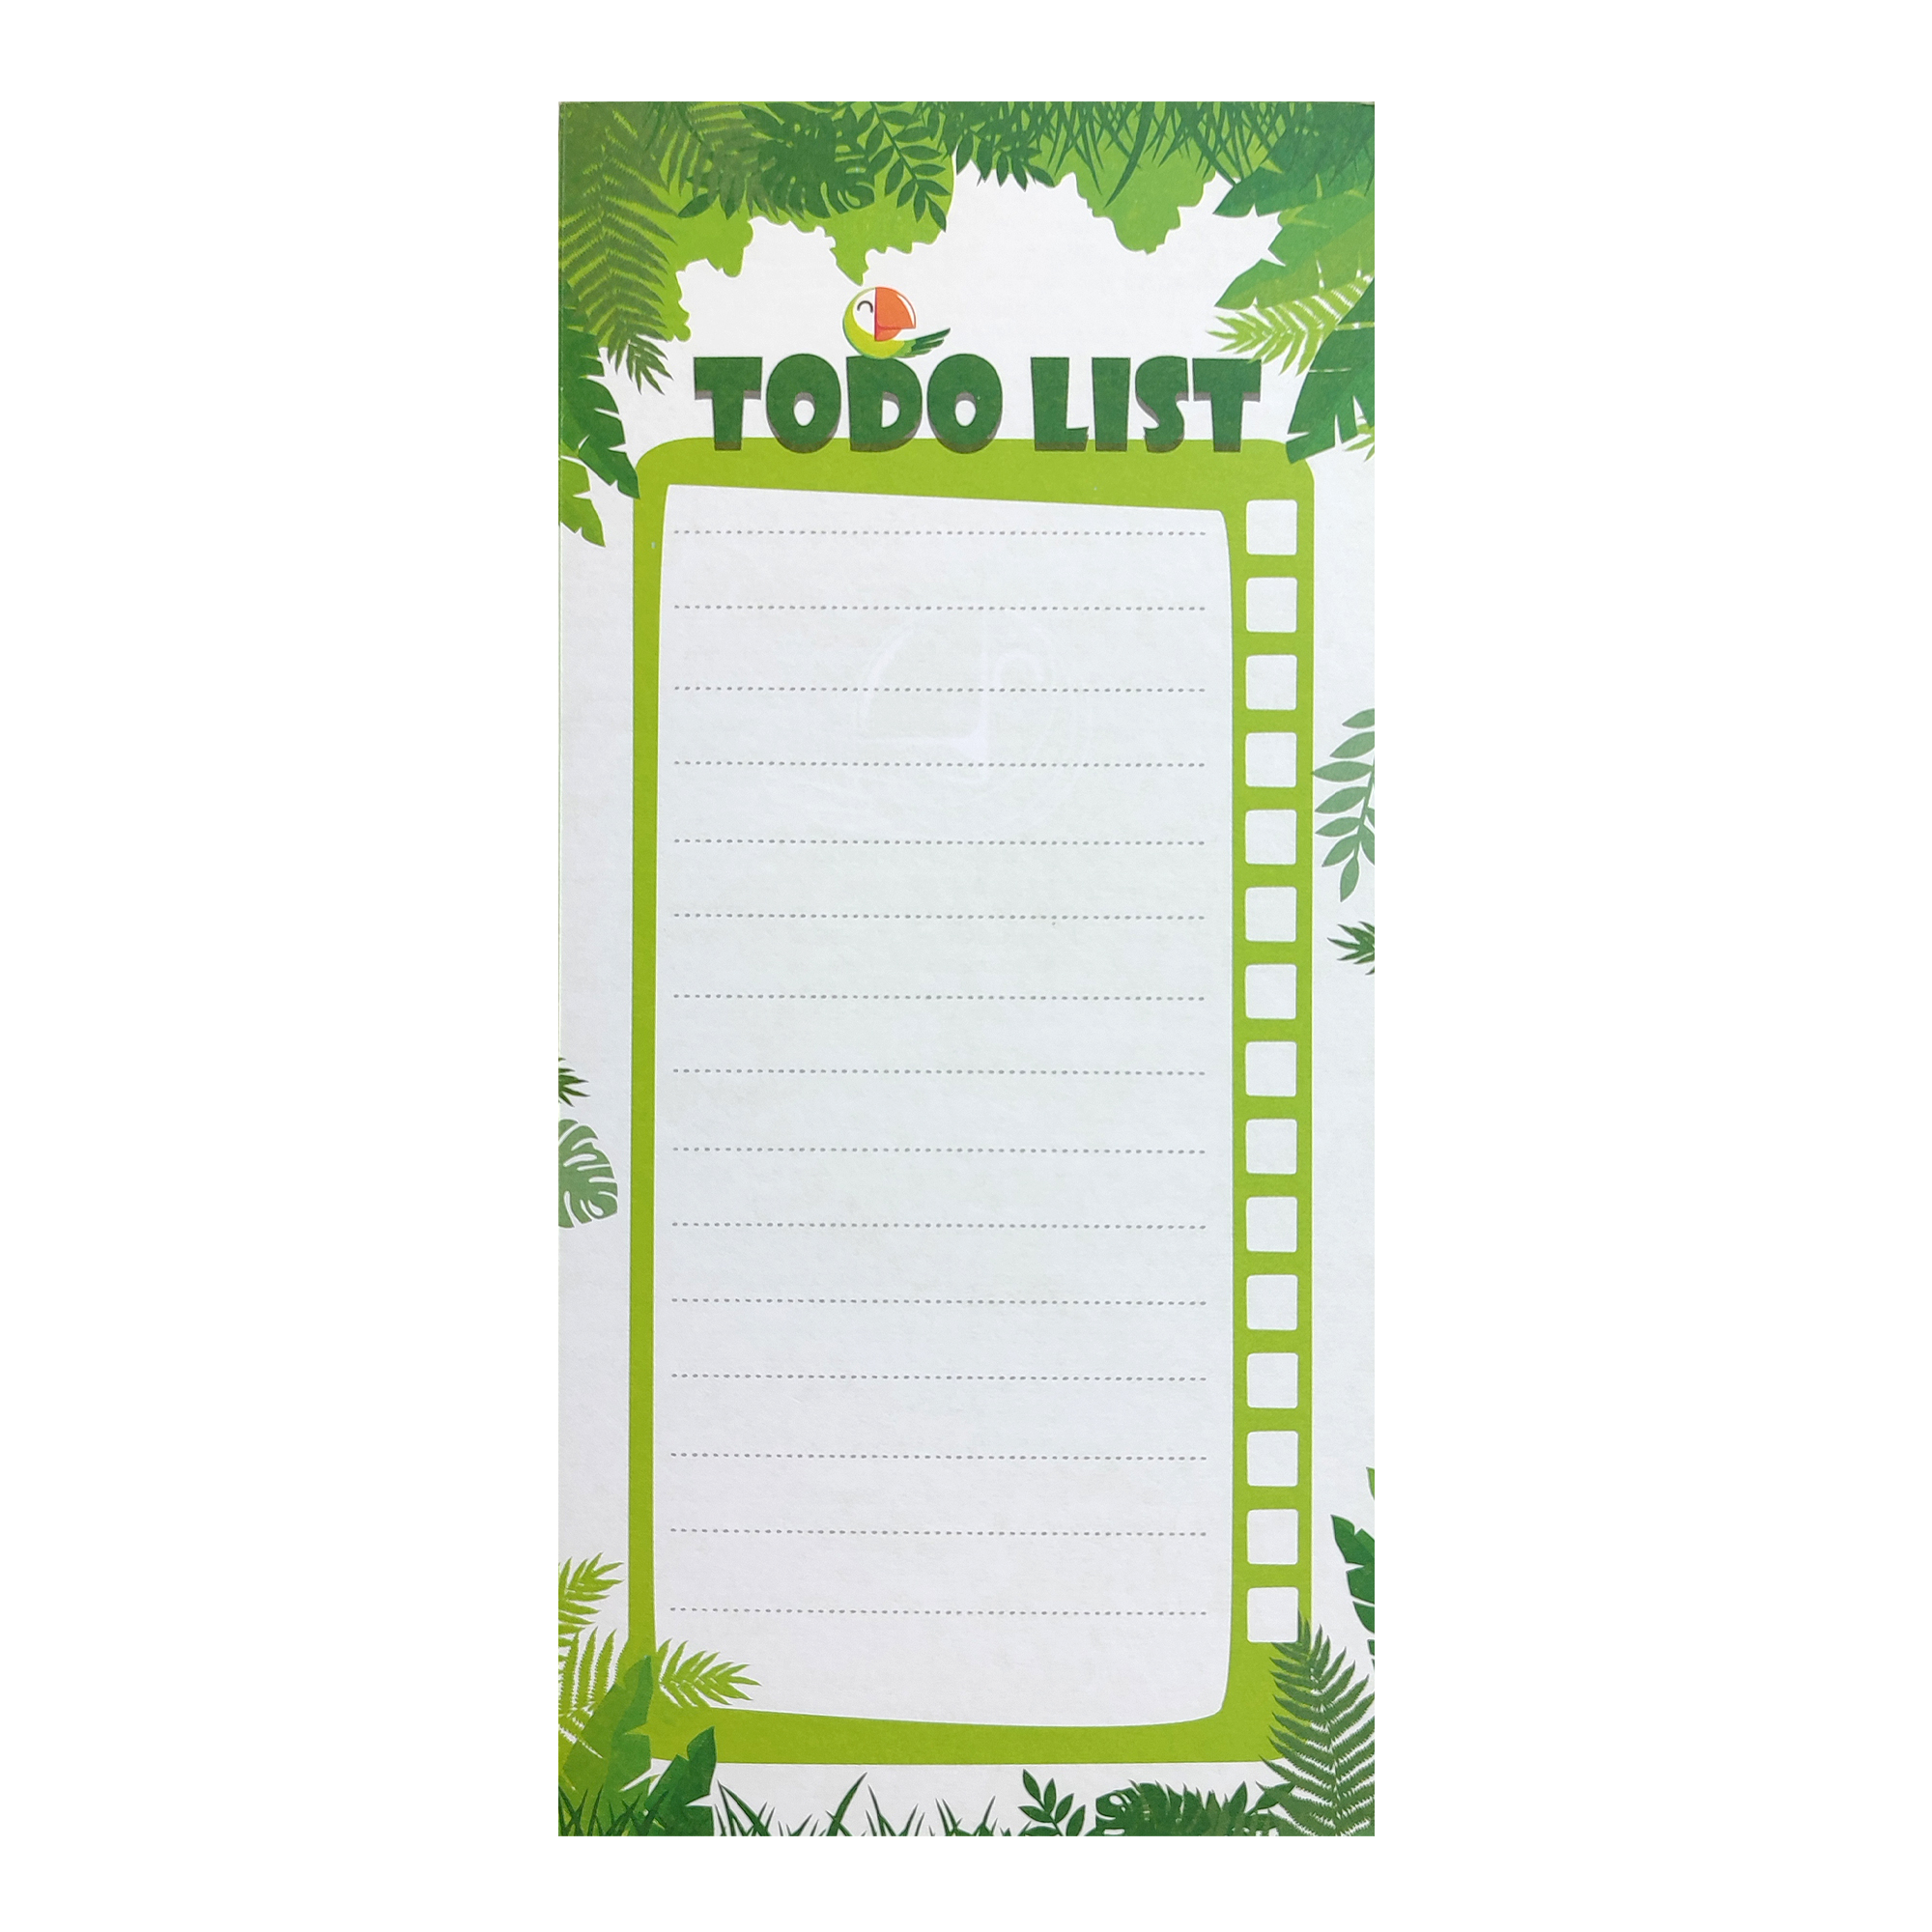 کاغذ یادداشت گرین پوینت طرح لیست کارهای روزانه مدل طوطی کد ToDoListGP2013